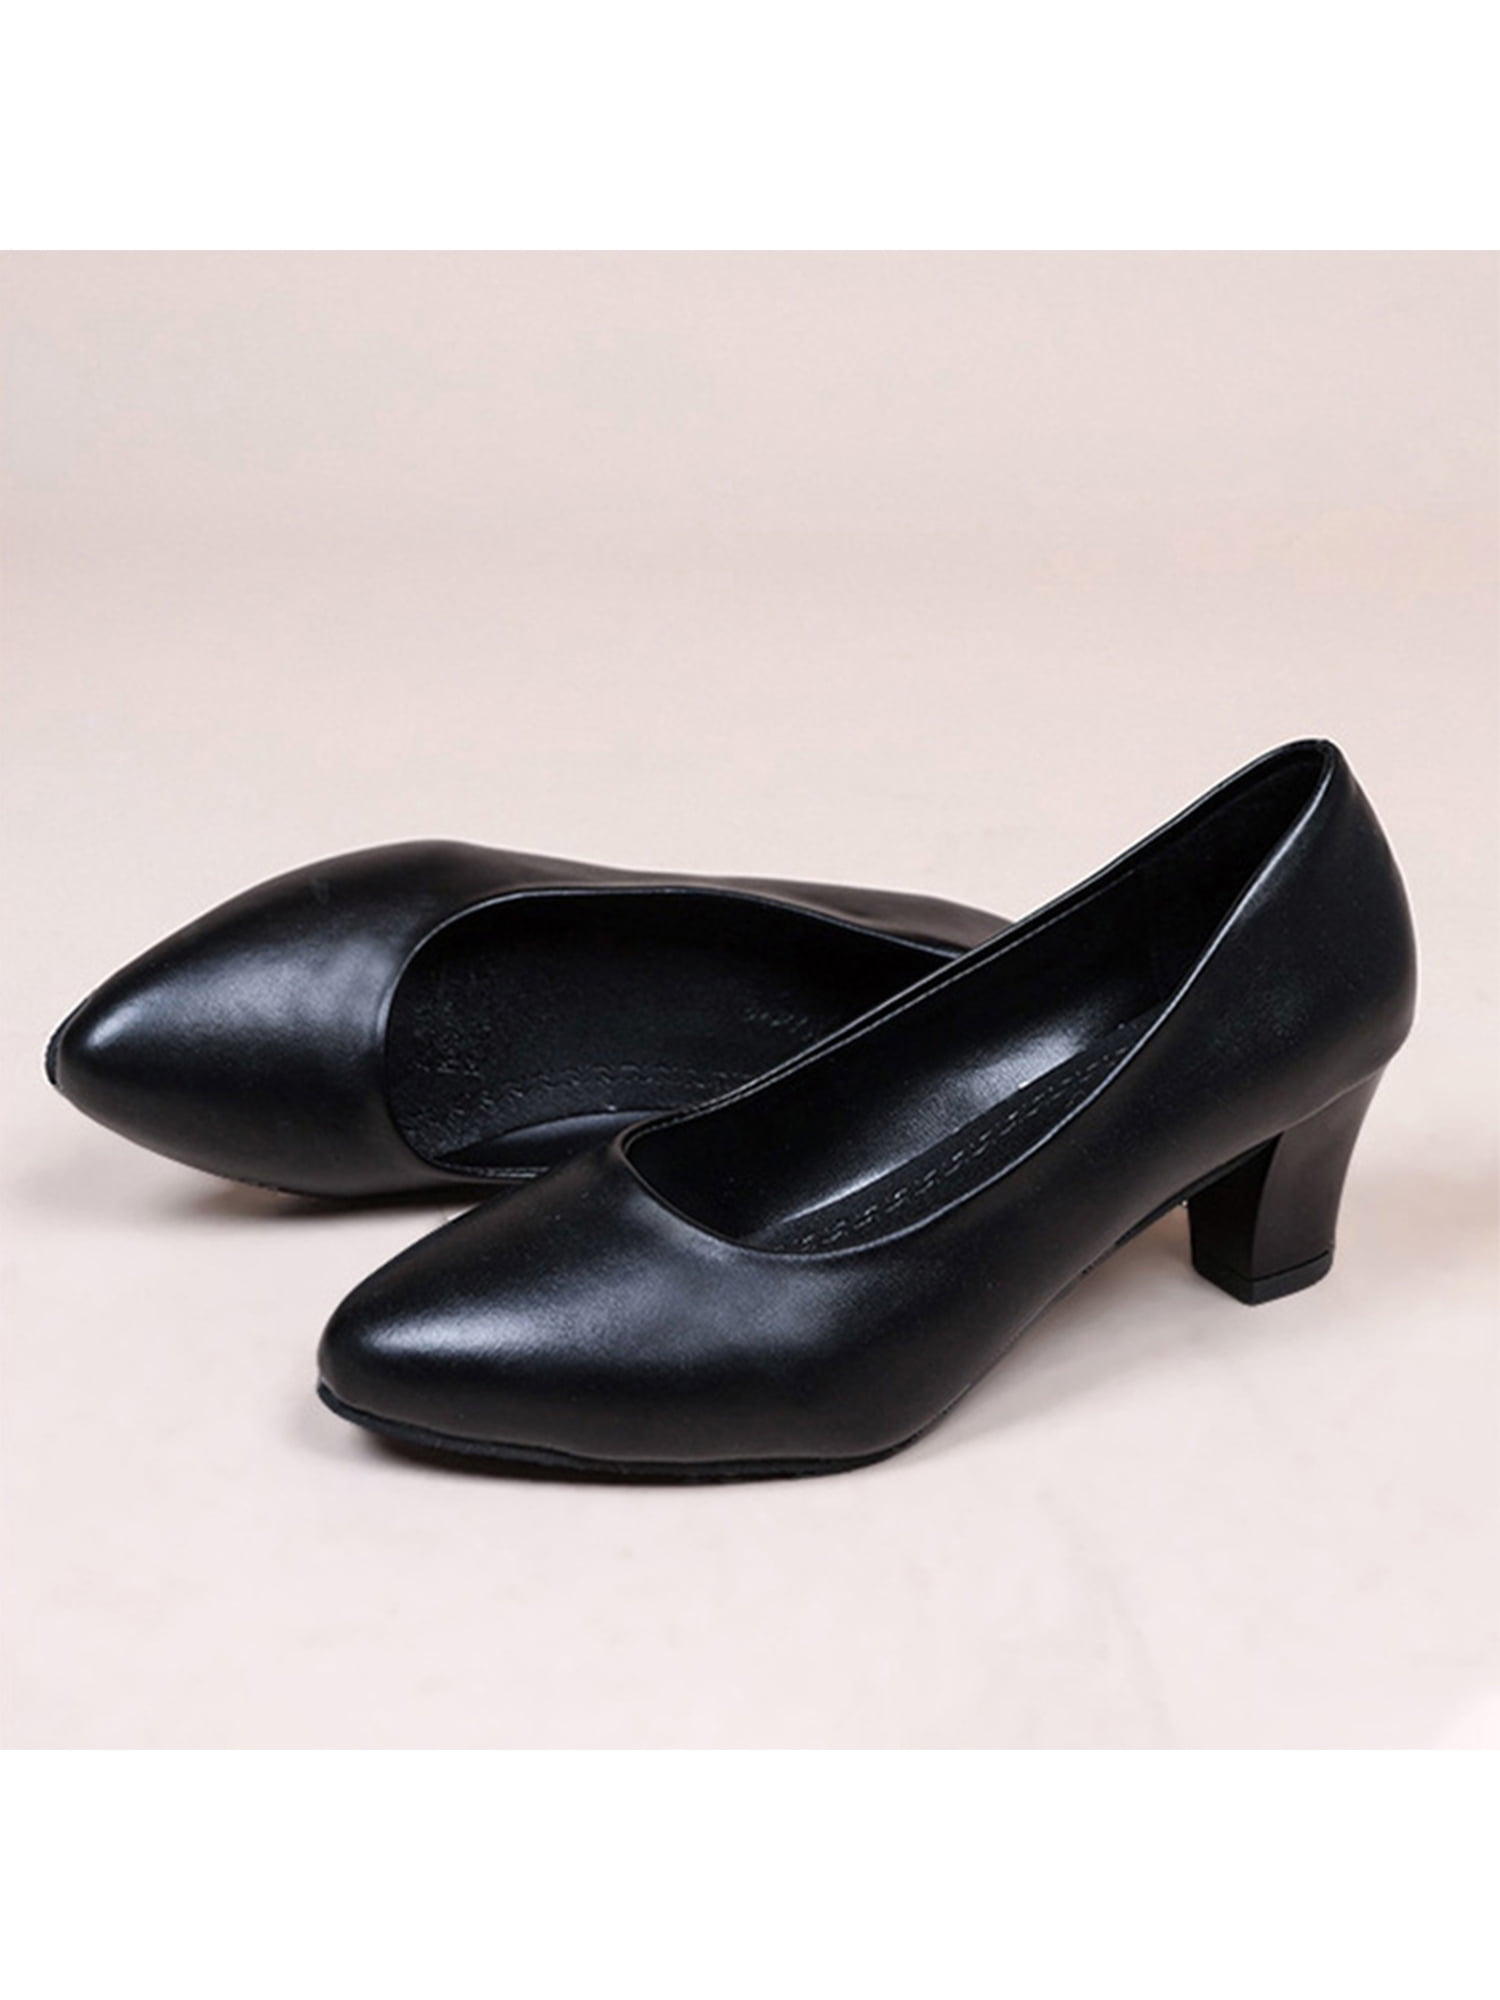 Buy LAZERA SHOES Black Suede Slip On Womens Formal Kitten Heels | Shoppers  Stop